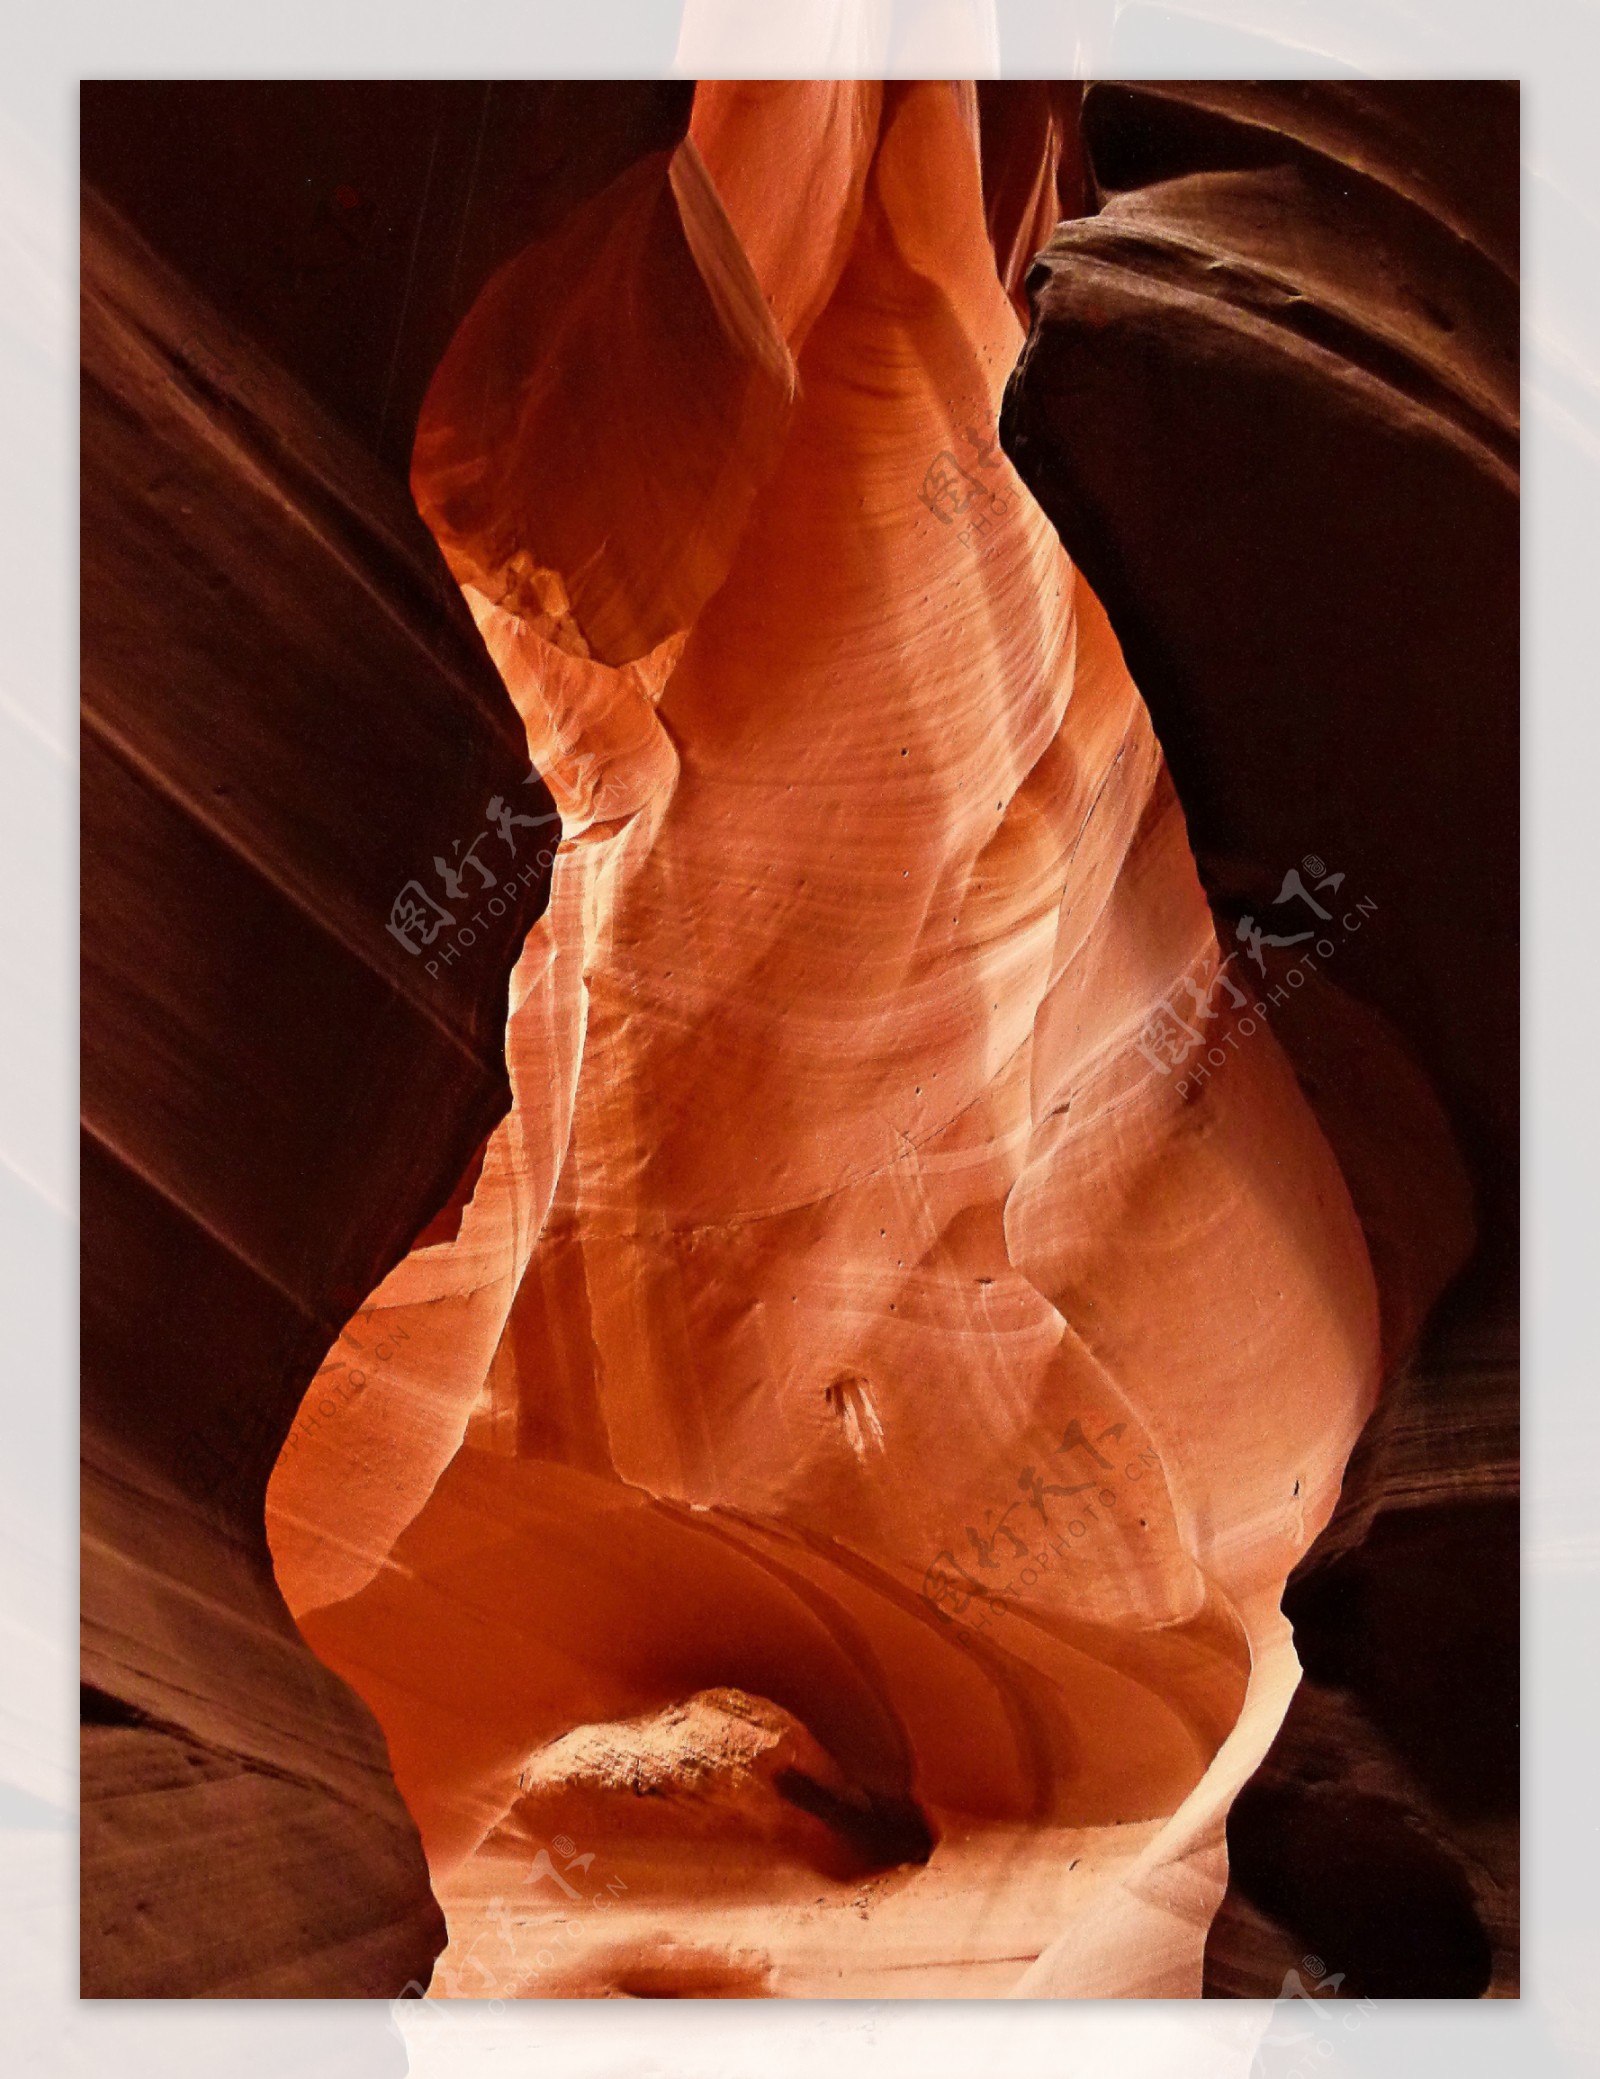 美国亚利桑羚羊峡谷图片